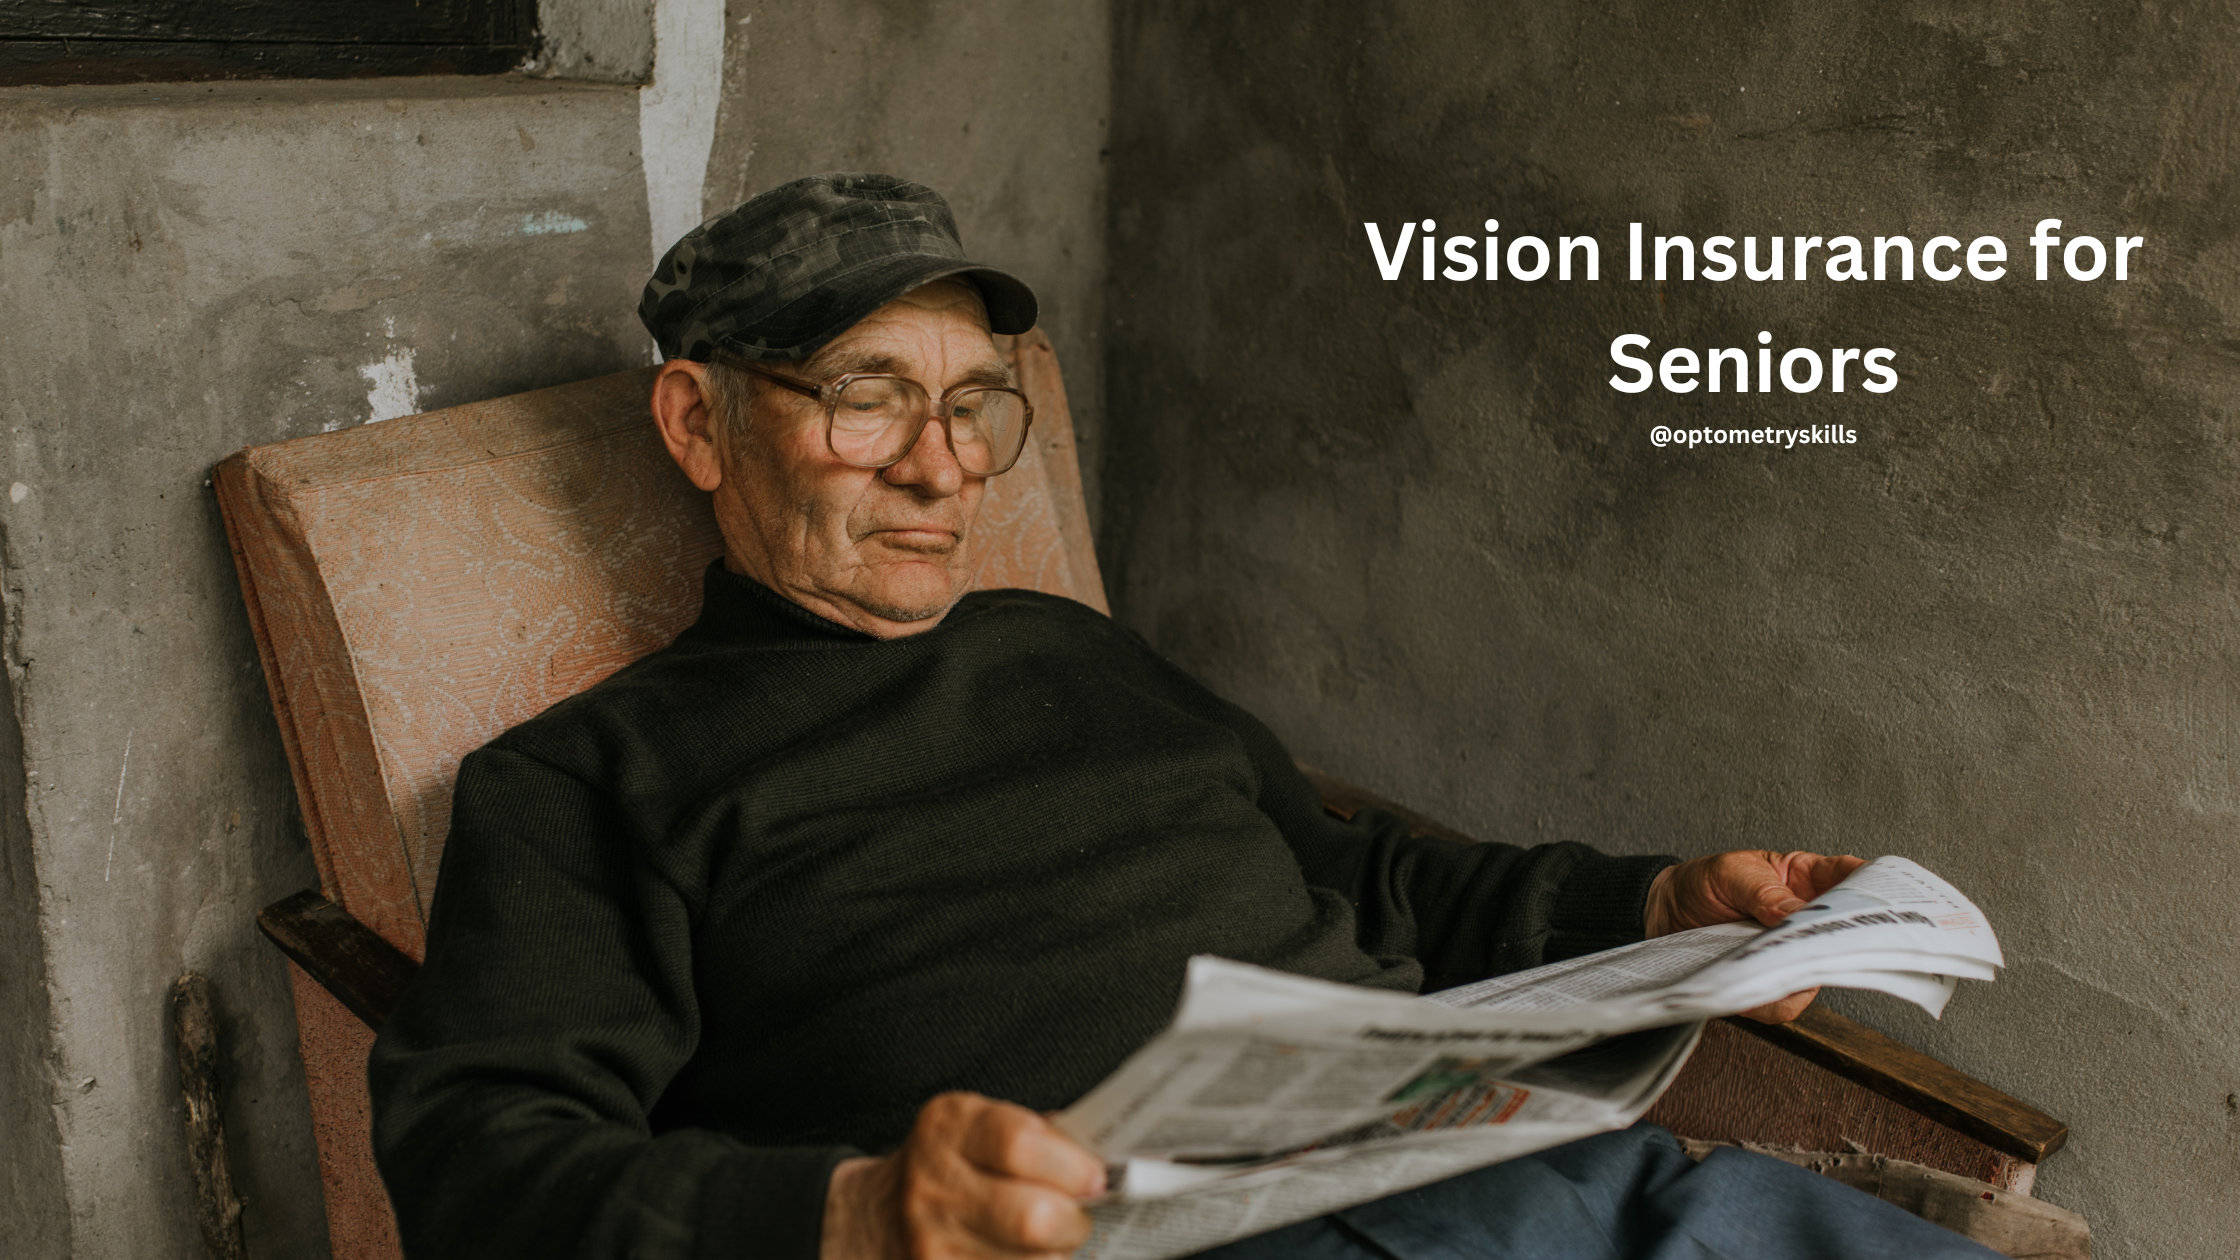 vision insurance for seniors